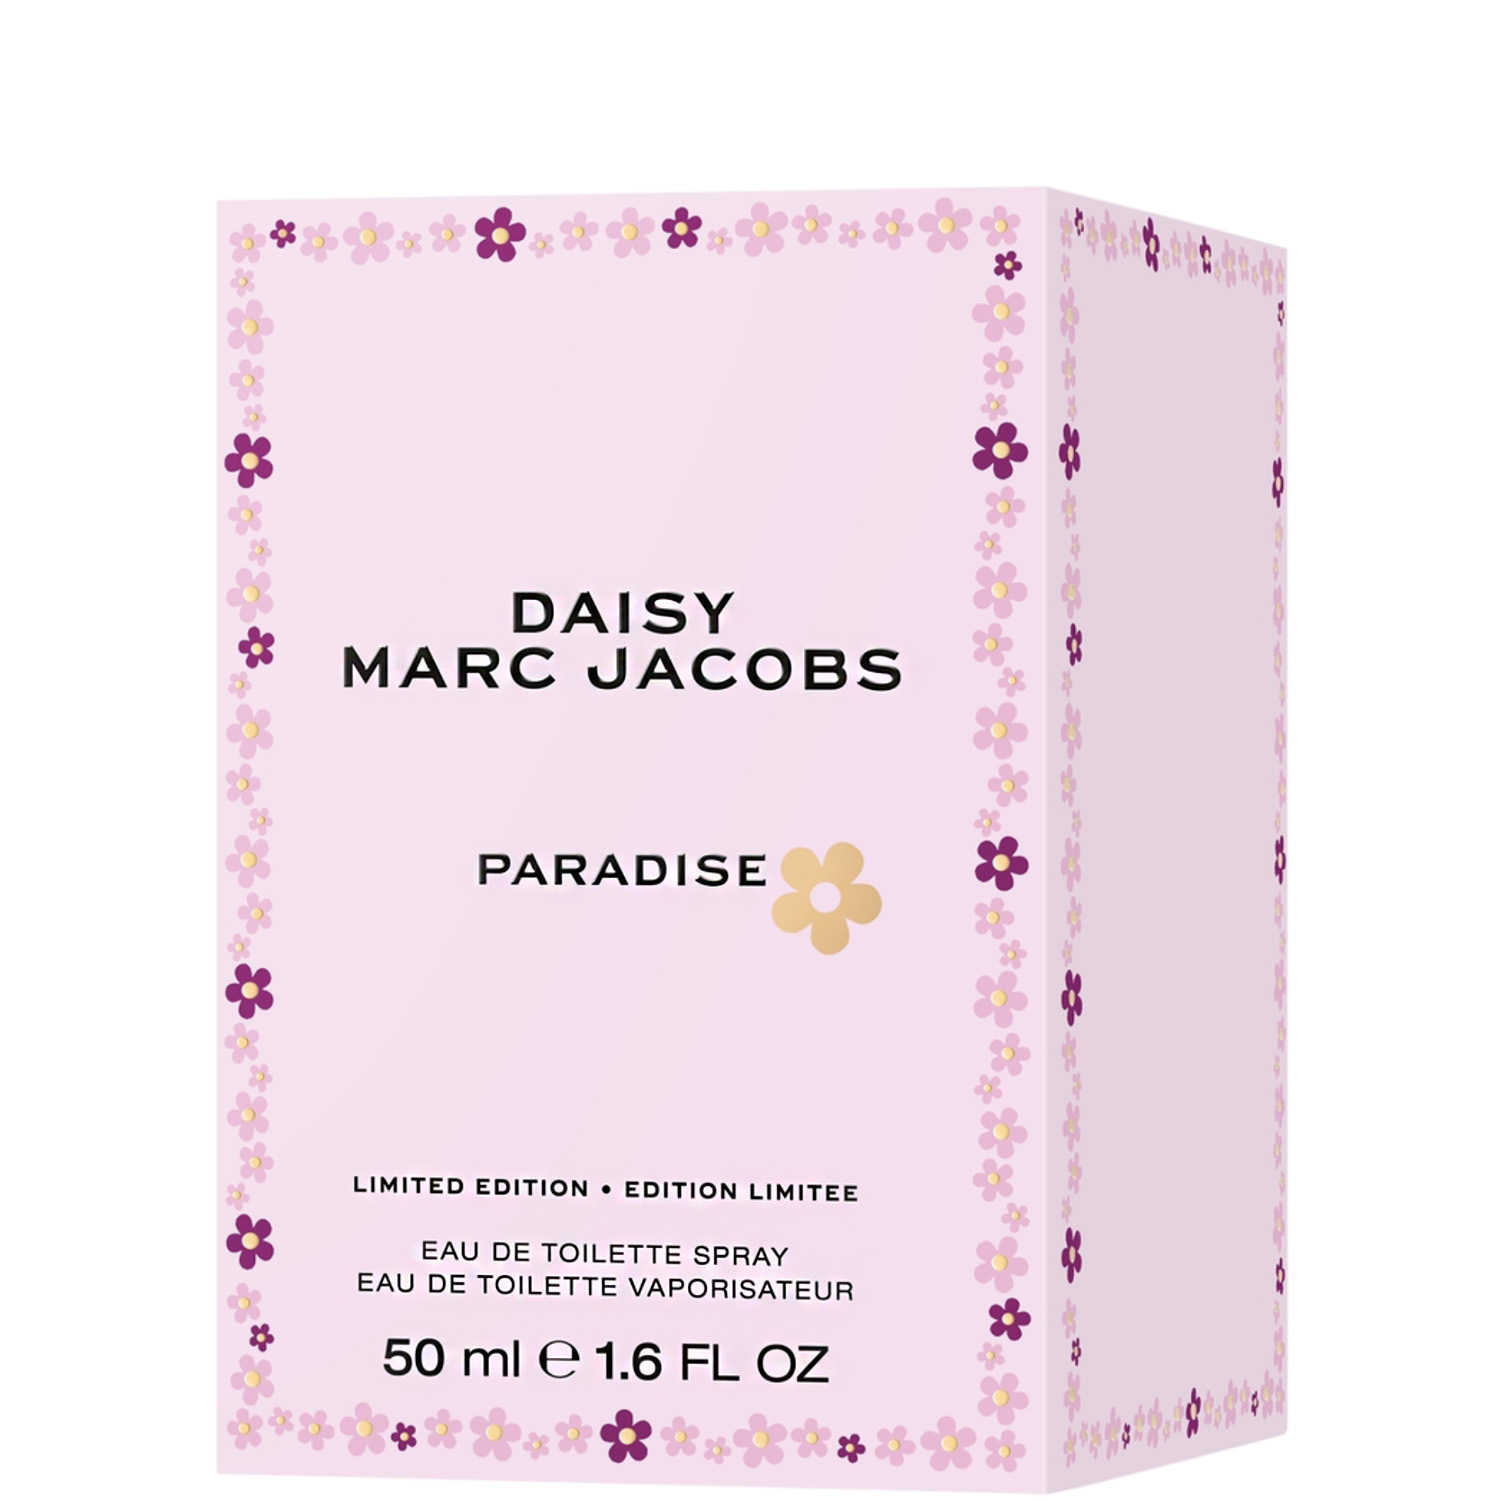 Marc Jacobs Daisy Paradise Limited Edition Eau de Toilette 50ml